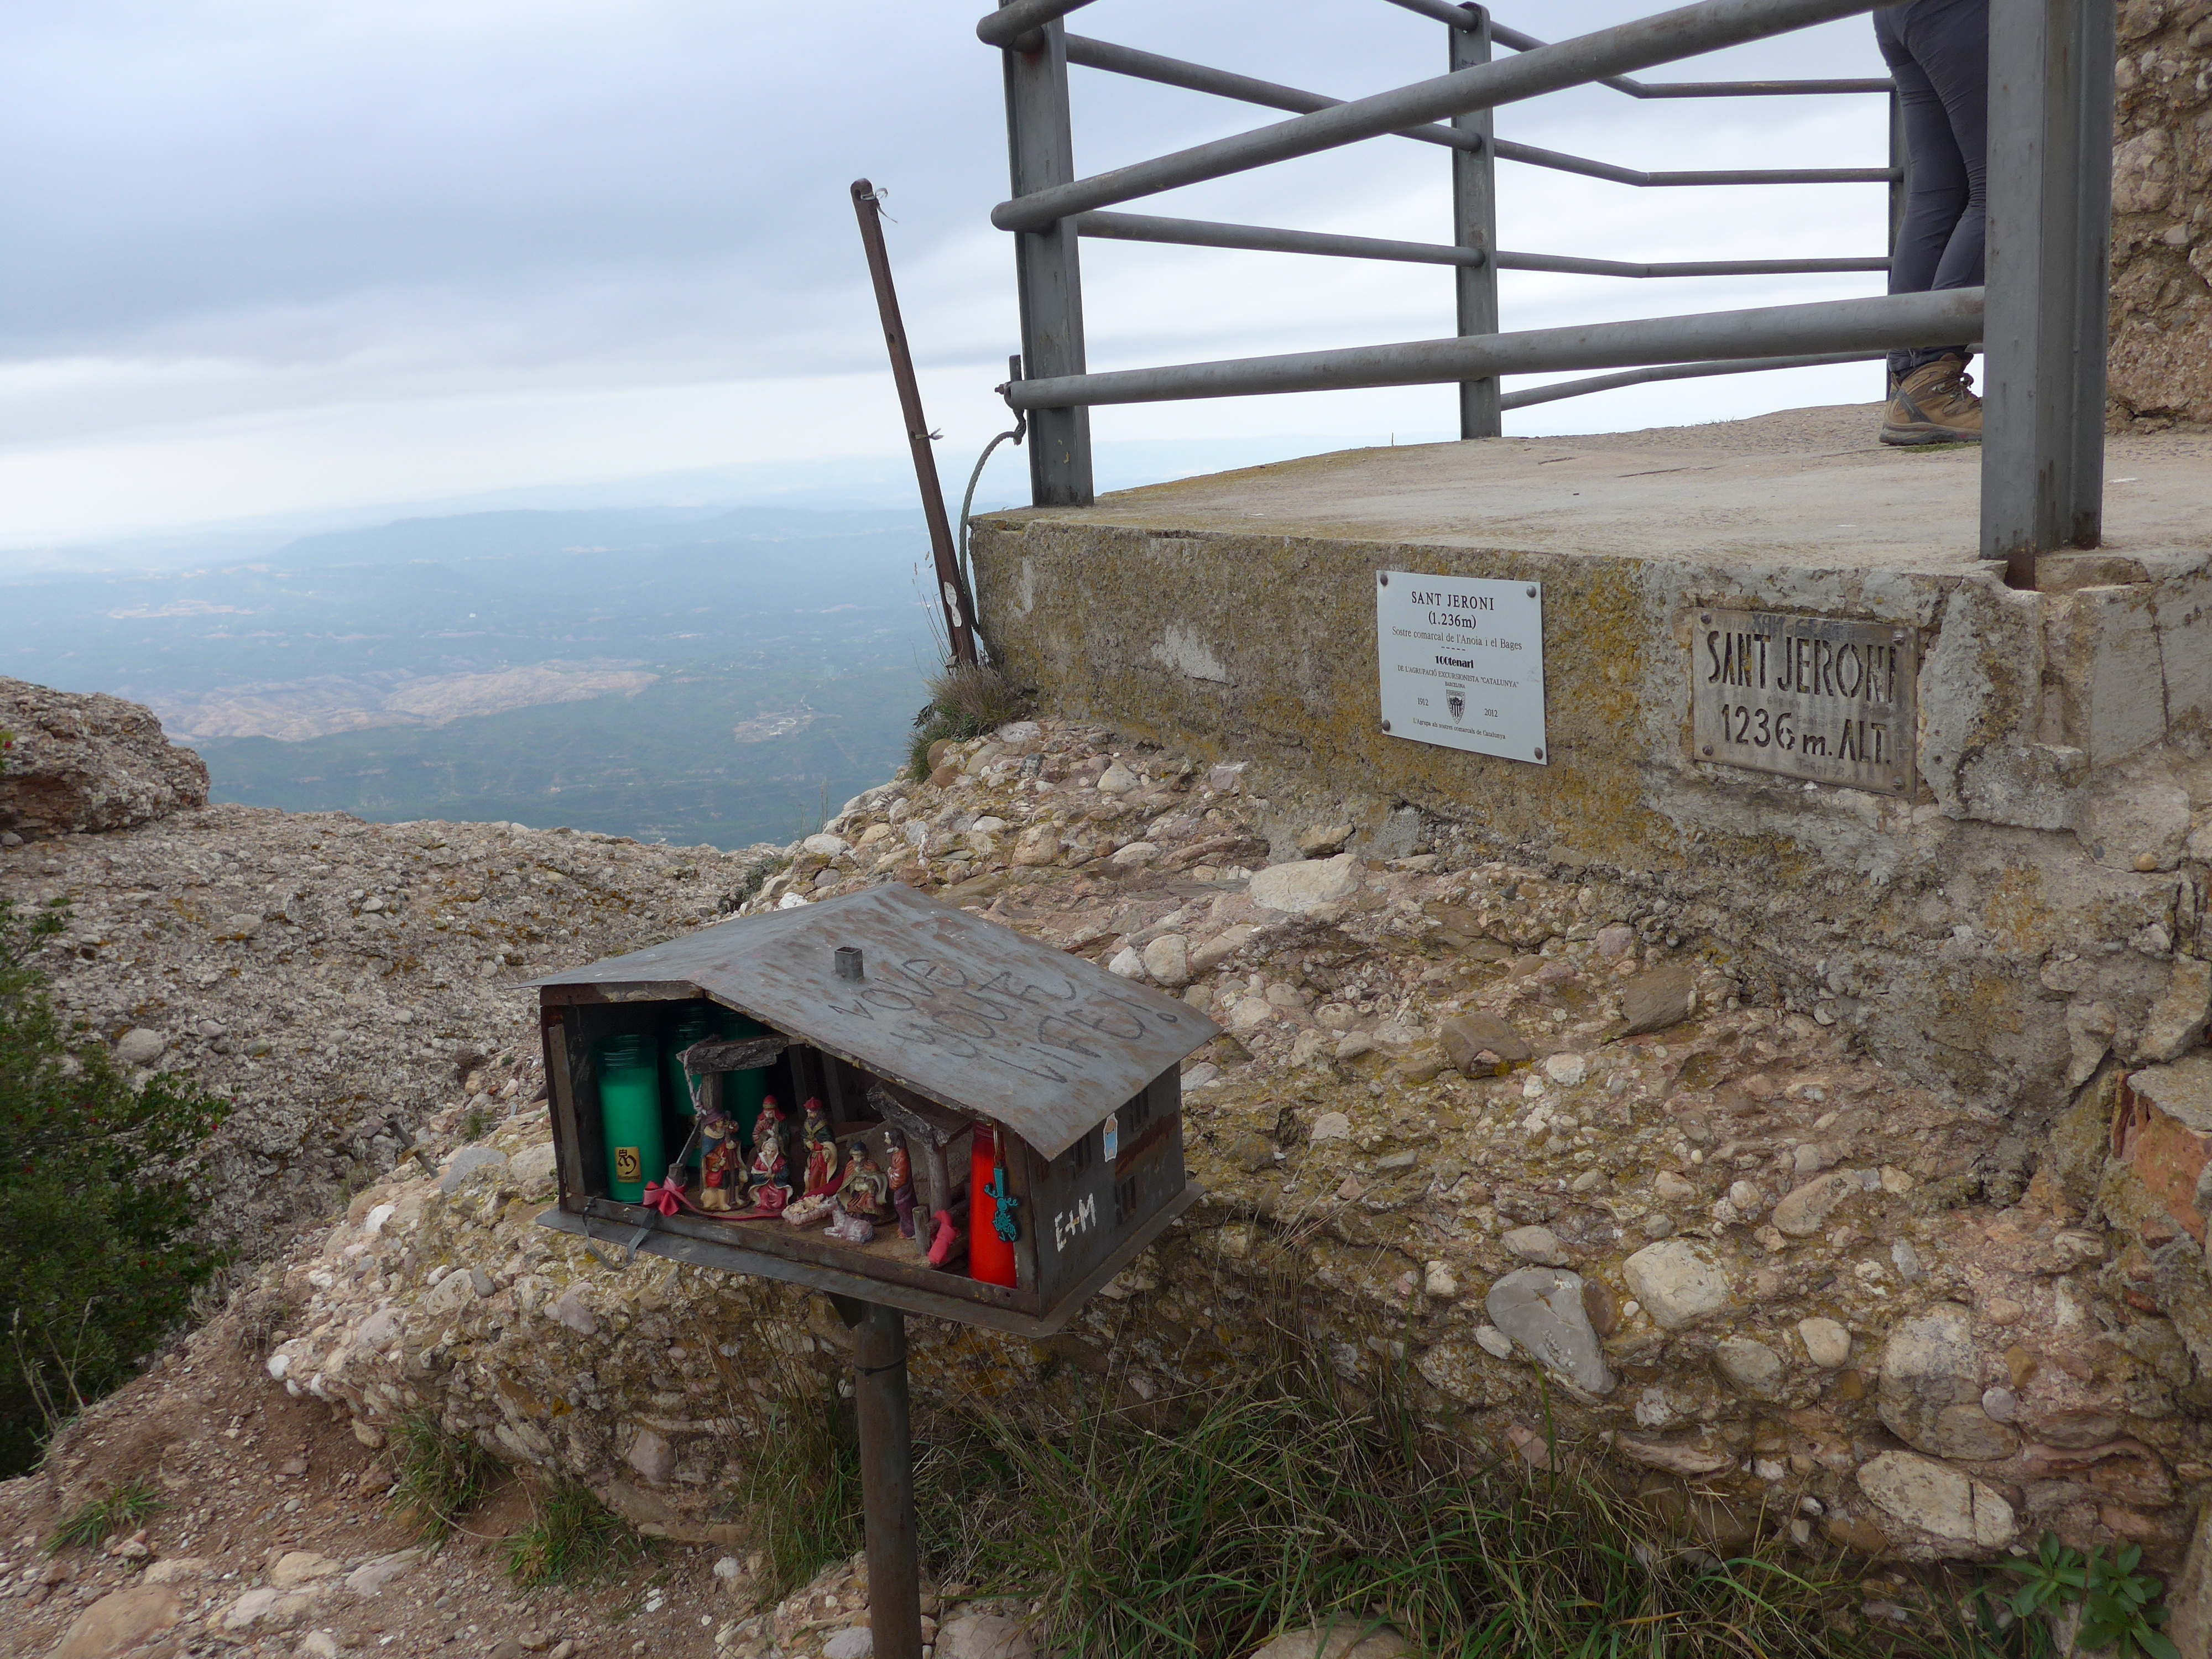 Montserrat Sant Jeroni peak at 1236m